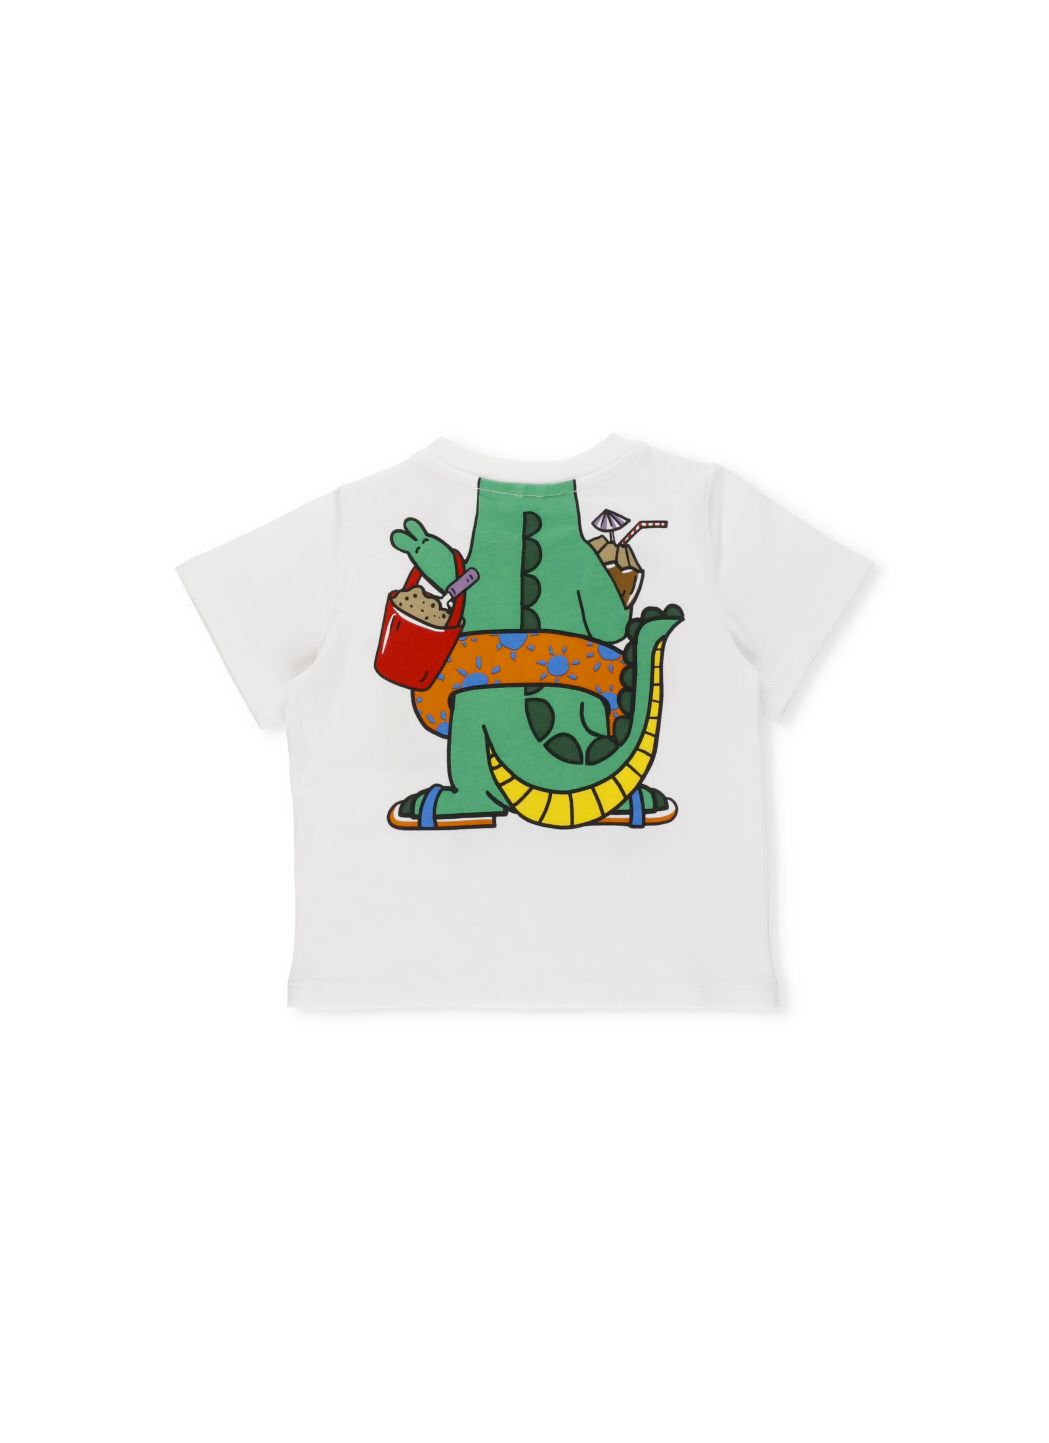 Dinosaur printed t-shirt